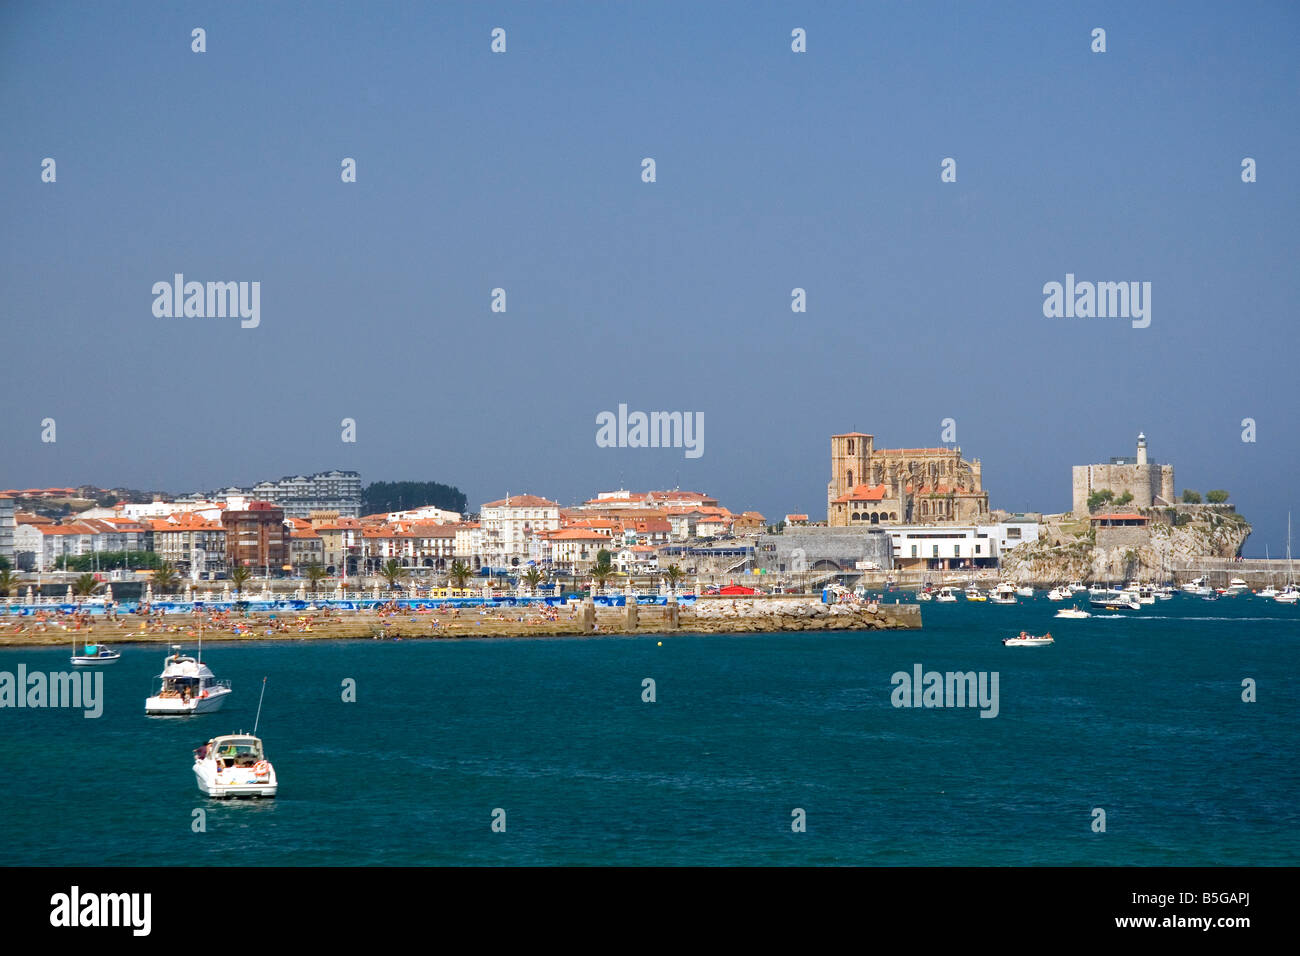 Le port et la ville de Castro Urdiales Cantabrie au nord de l'Espagne Banque D'Images